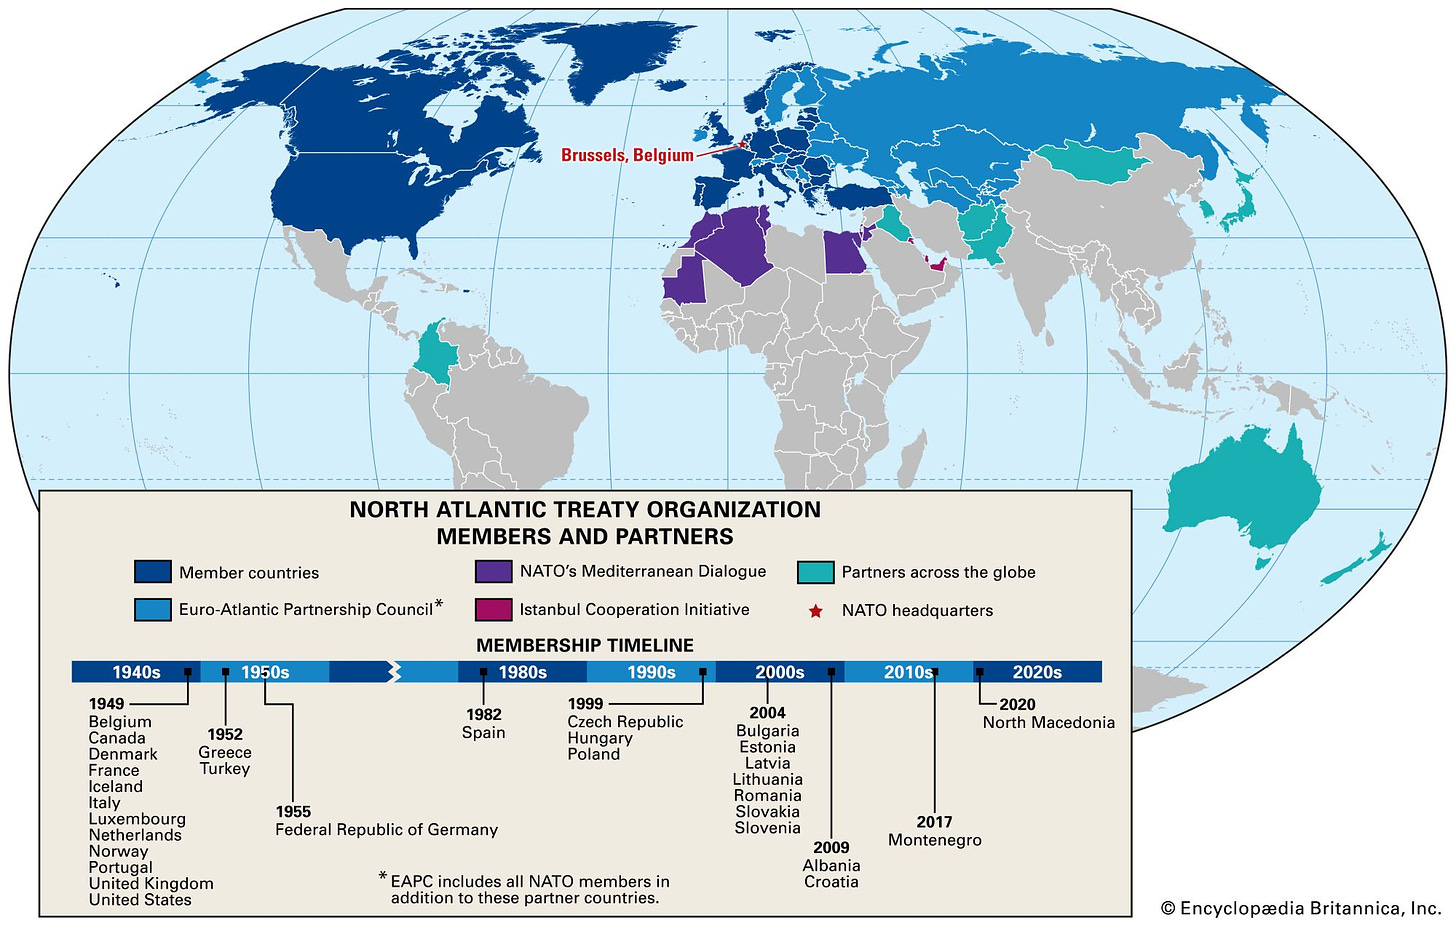 https://cdn.britannica.com/29/160029-050-A7DE9A5D/Map-countries-partner-member-North-Atlantic-Treaty.jpg